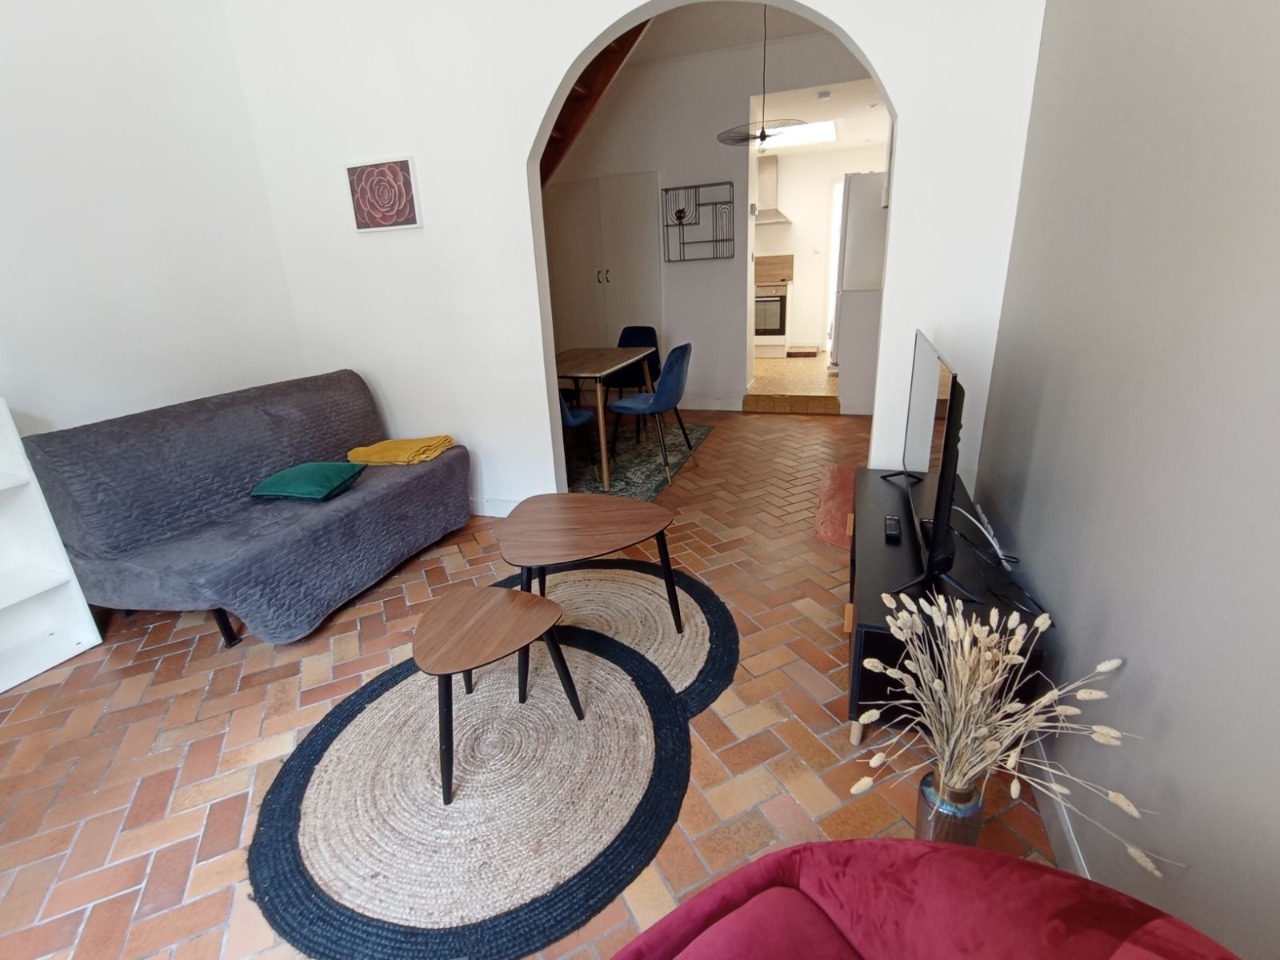 Maison meublee t2bis lille porte de valenciennes Photo 1 - JLW Immobilier